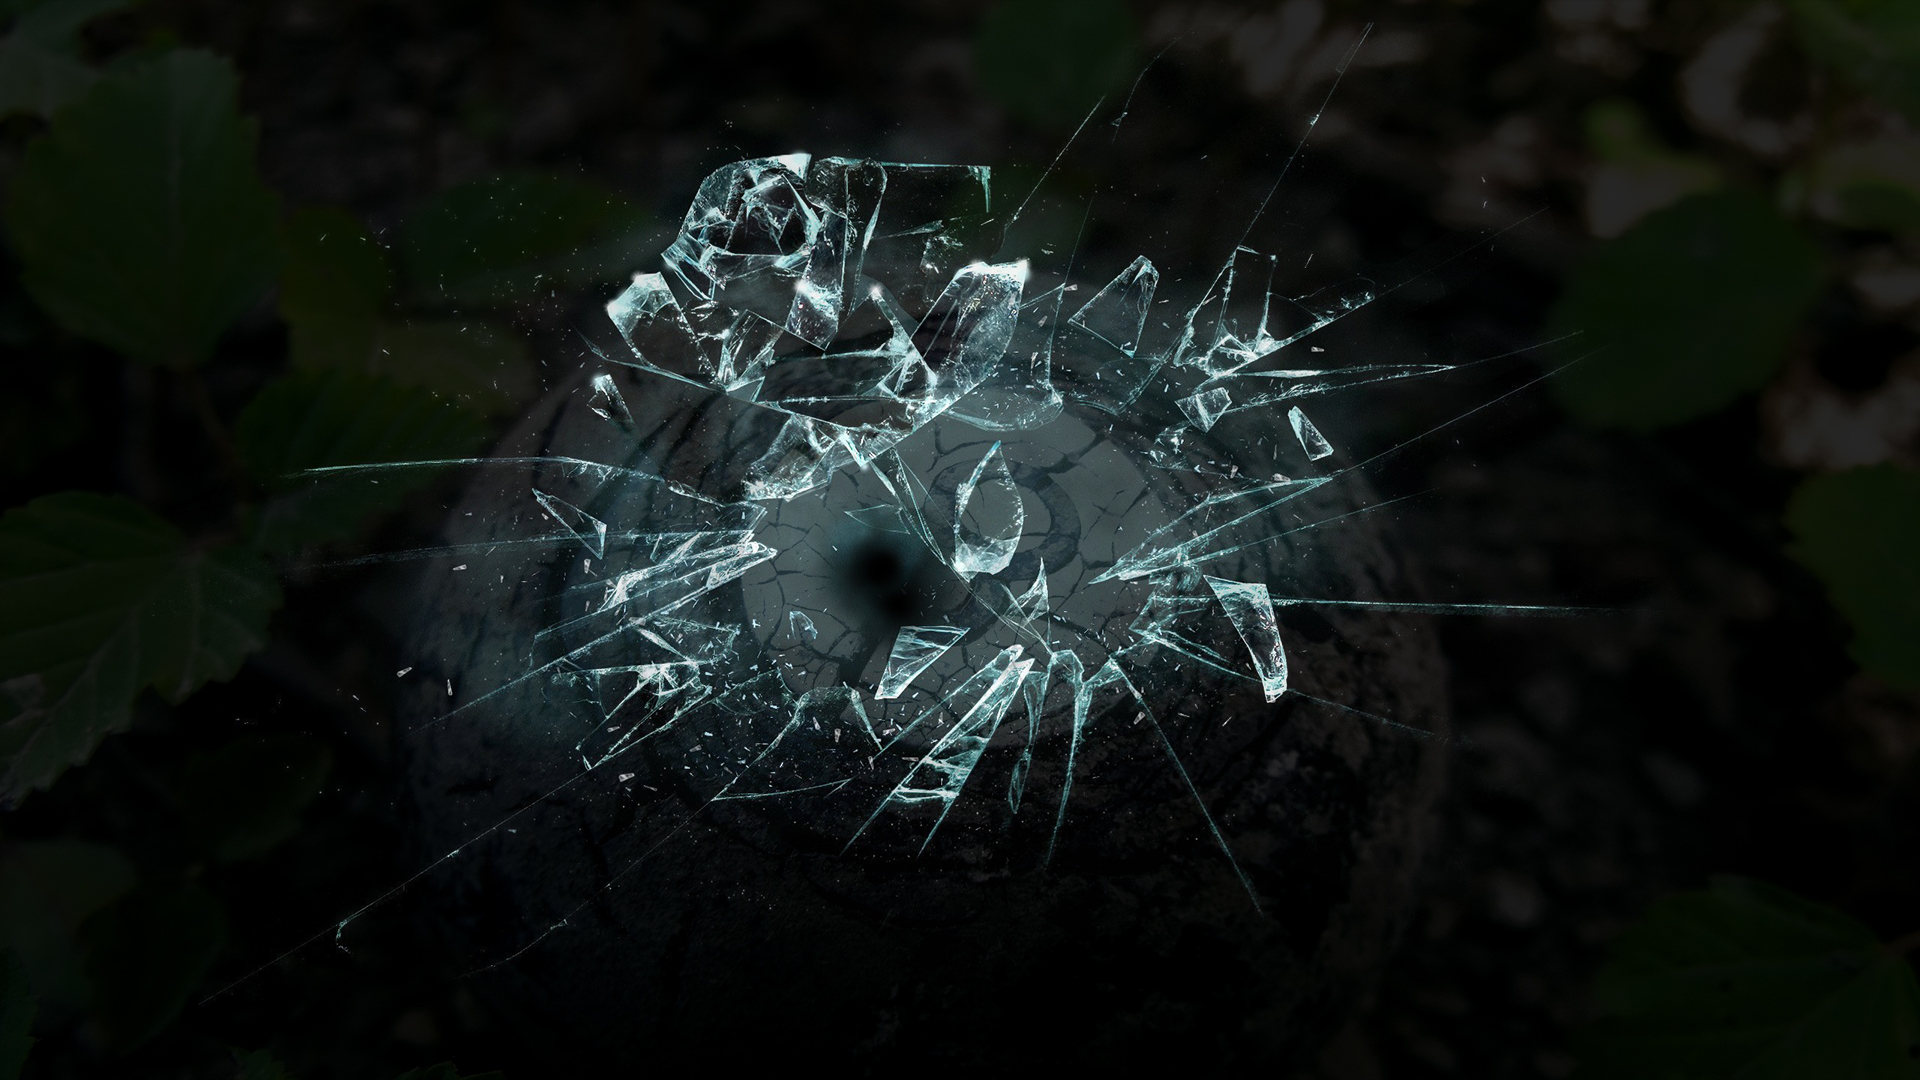 General 1920x1080 broken glass glass digital art 8-ball shattered